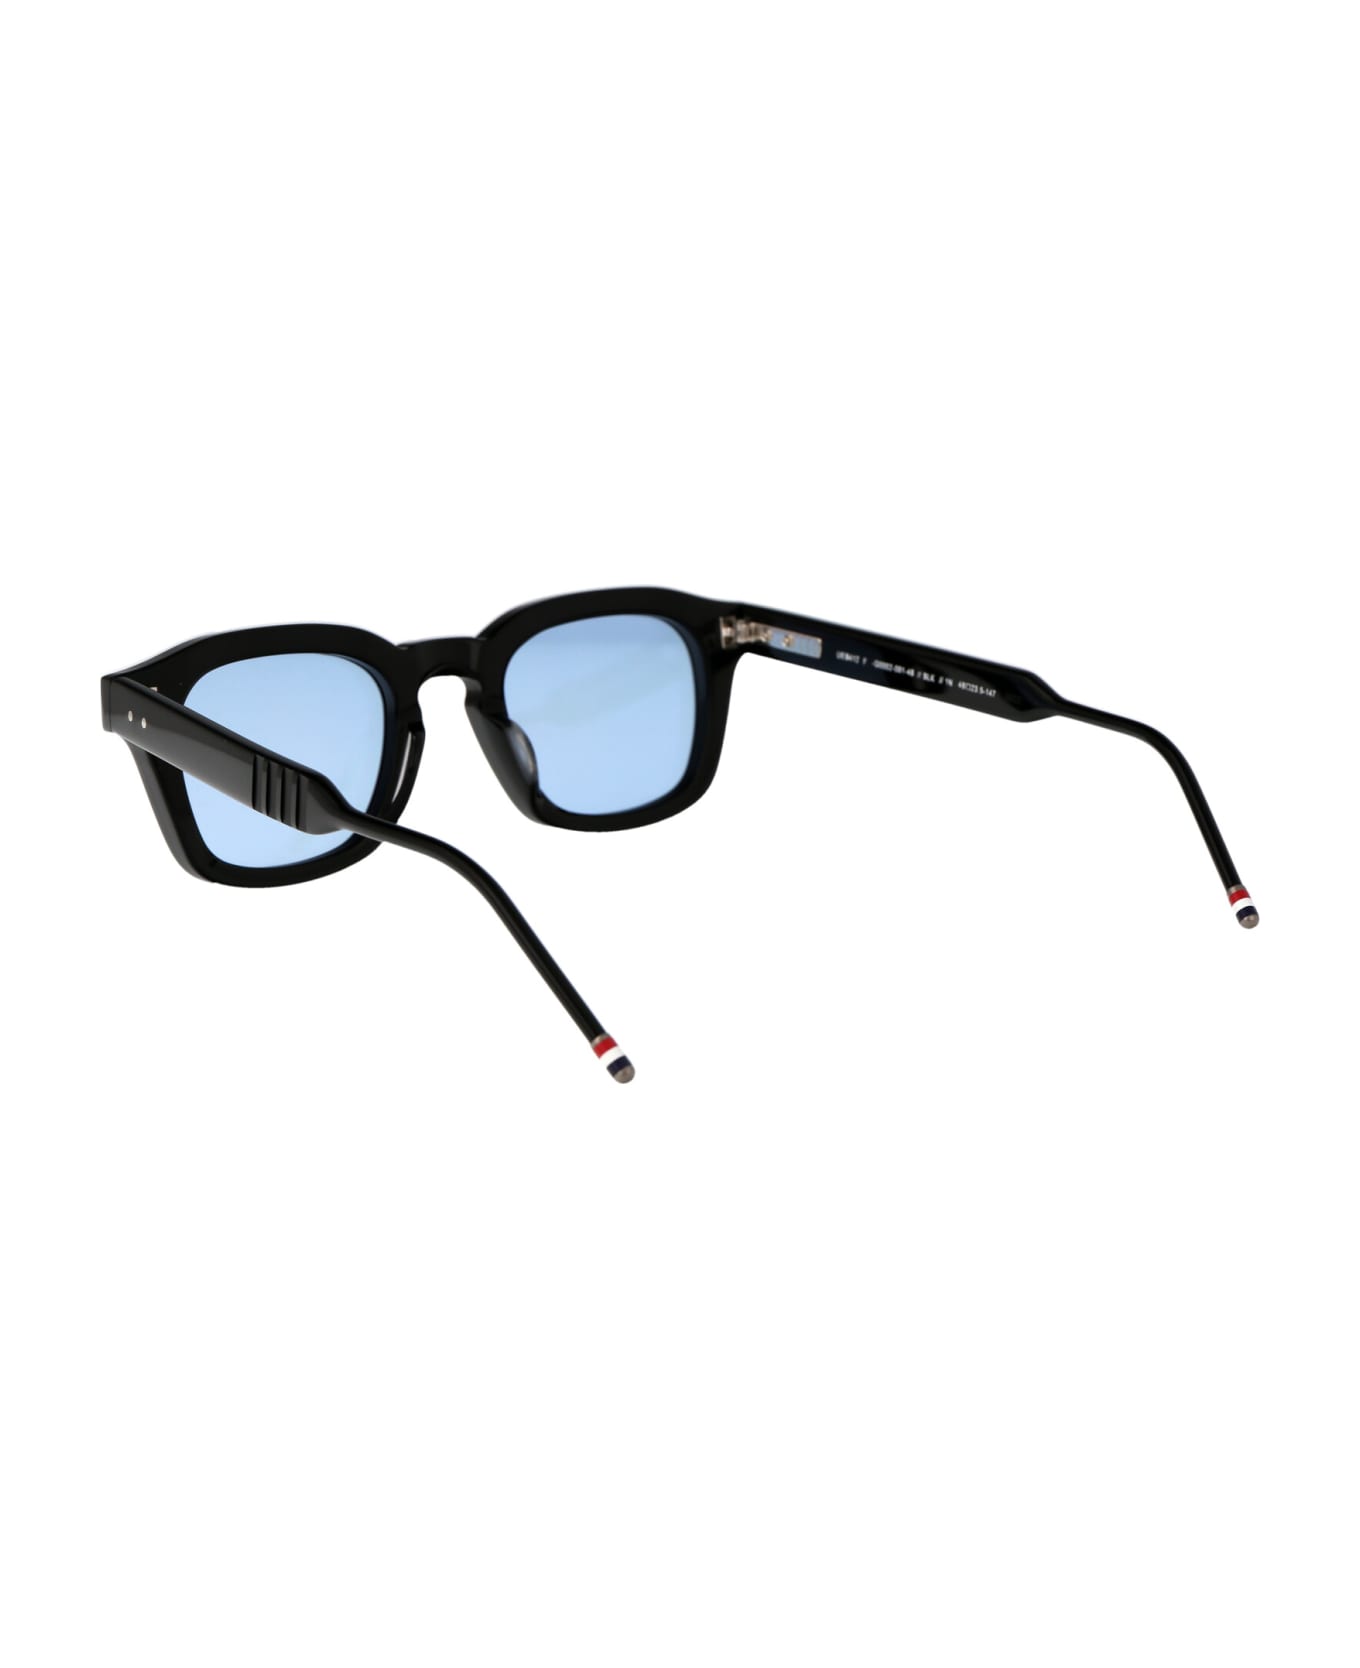 Thom Browne Ues412f-g0002-001-48 Sunglasses - 001 BLACK サングラス